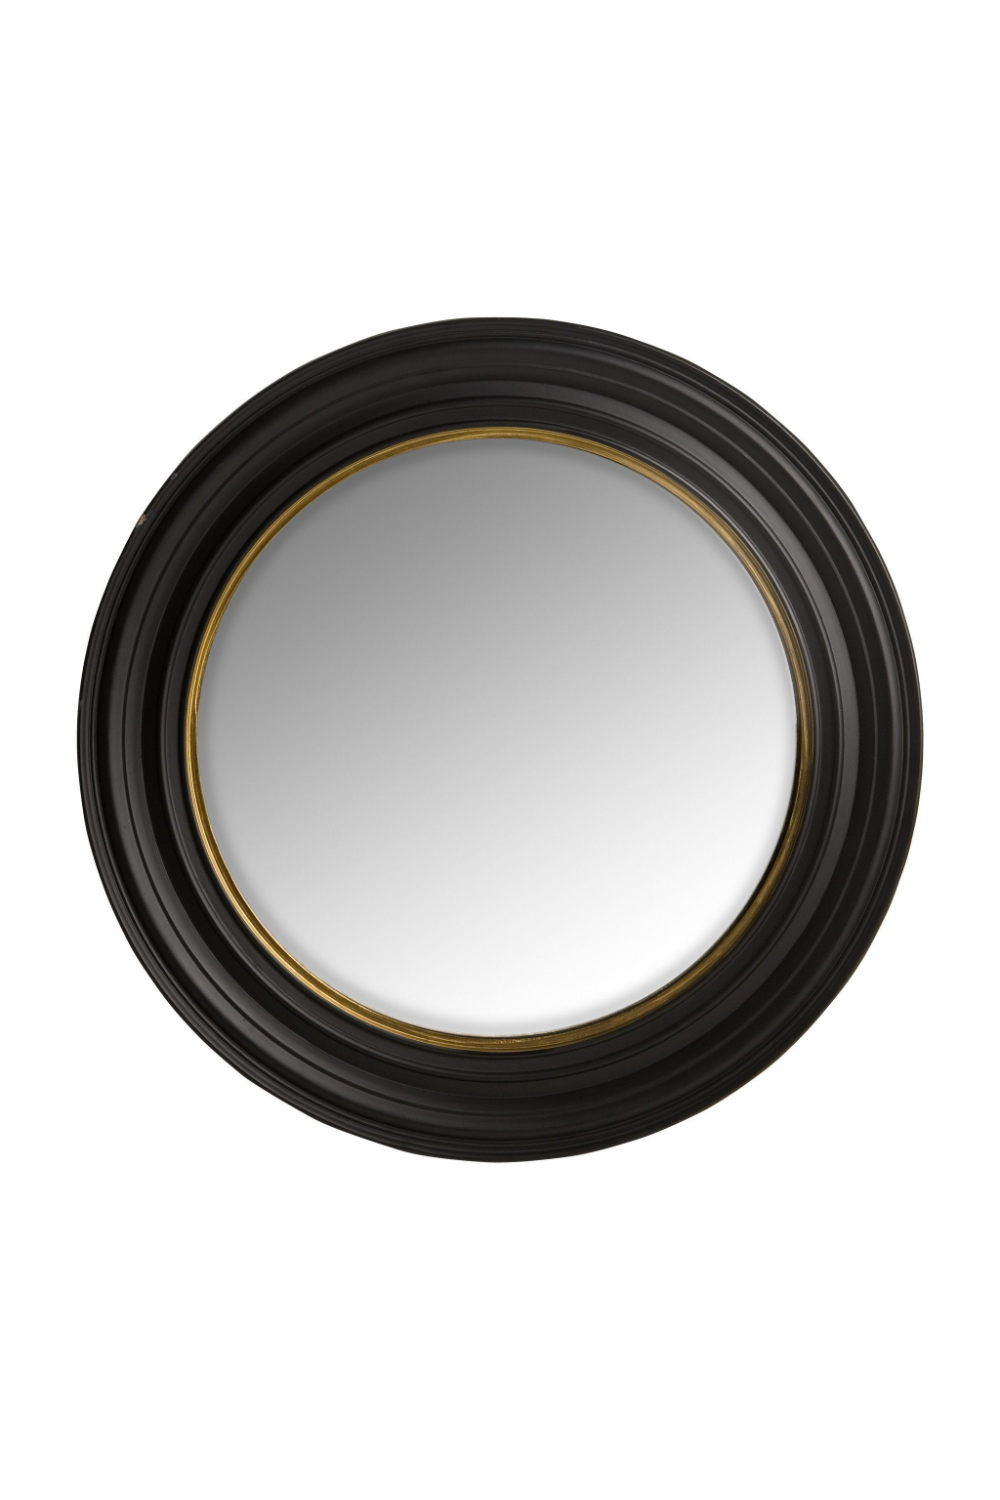 Large Round Black Frame Mirror | Eichholtz Cuba | OROA